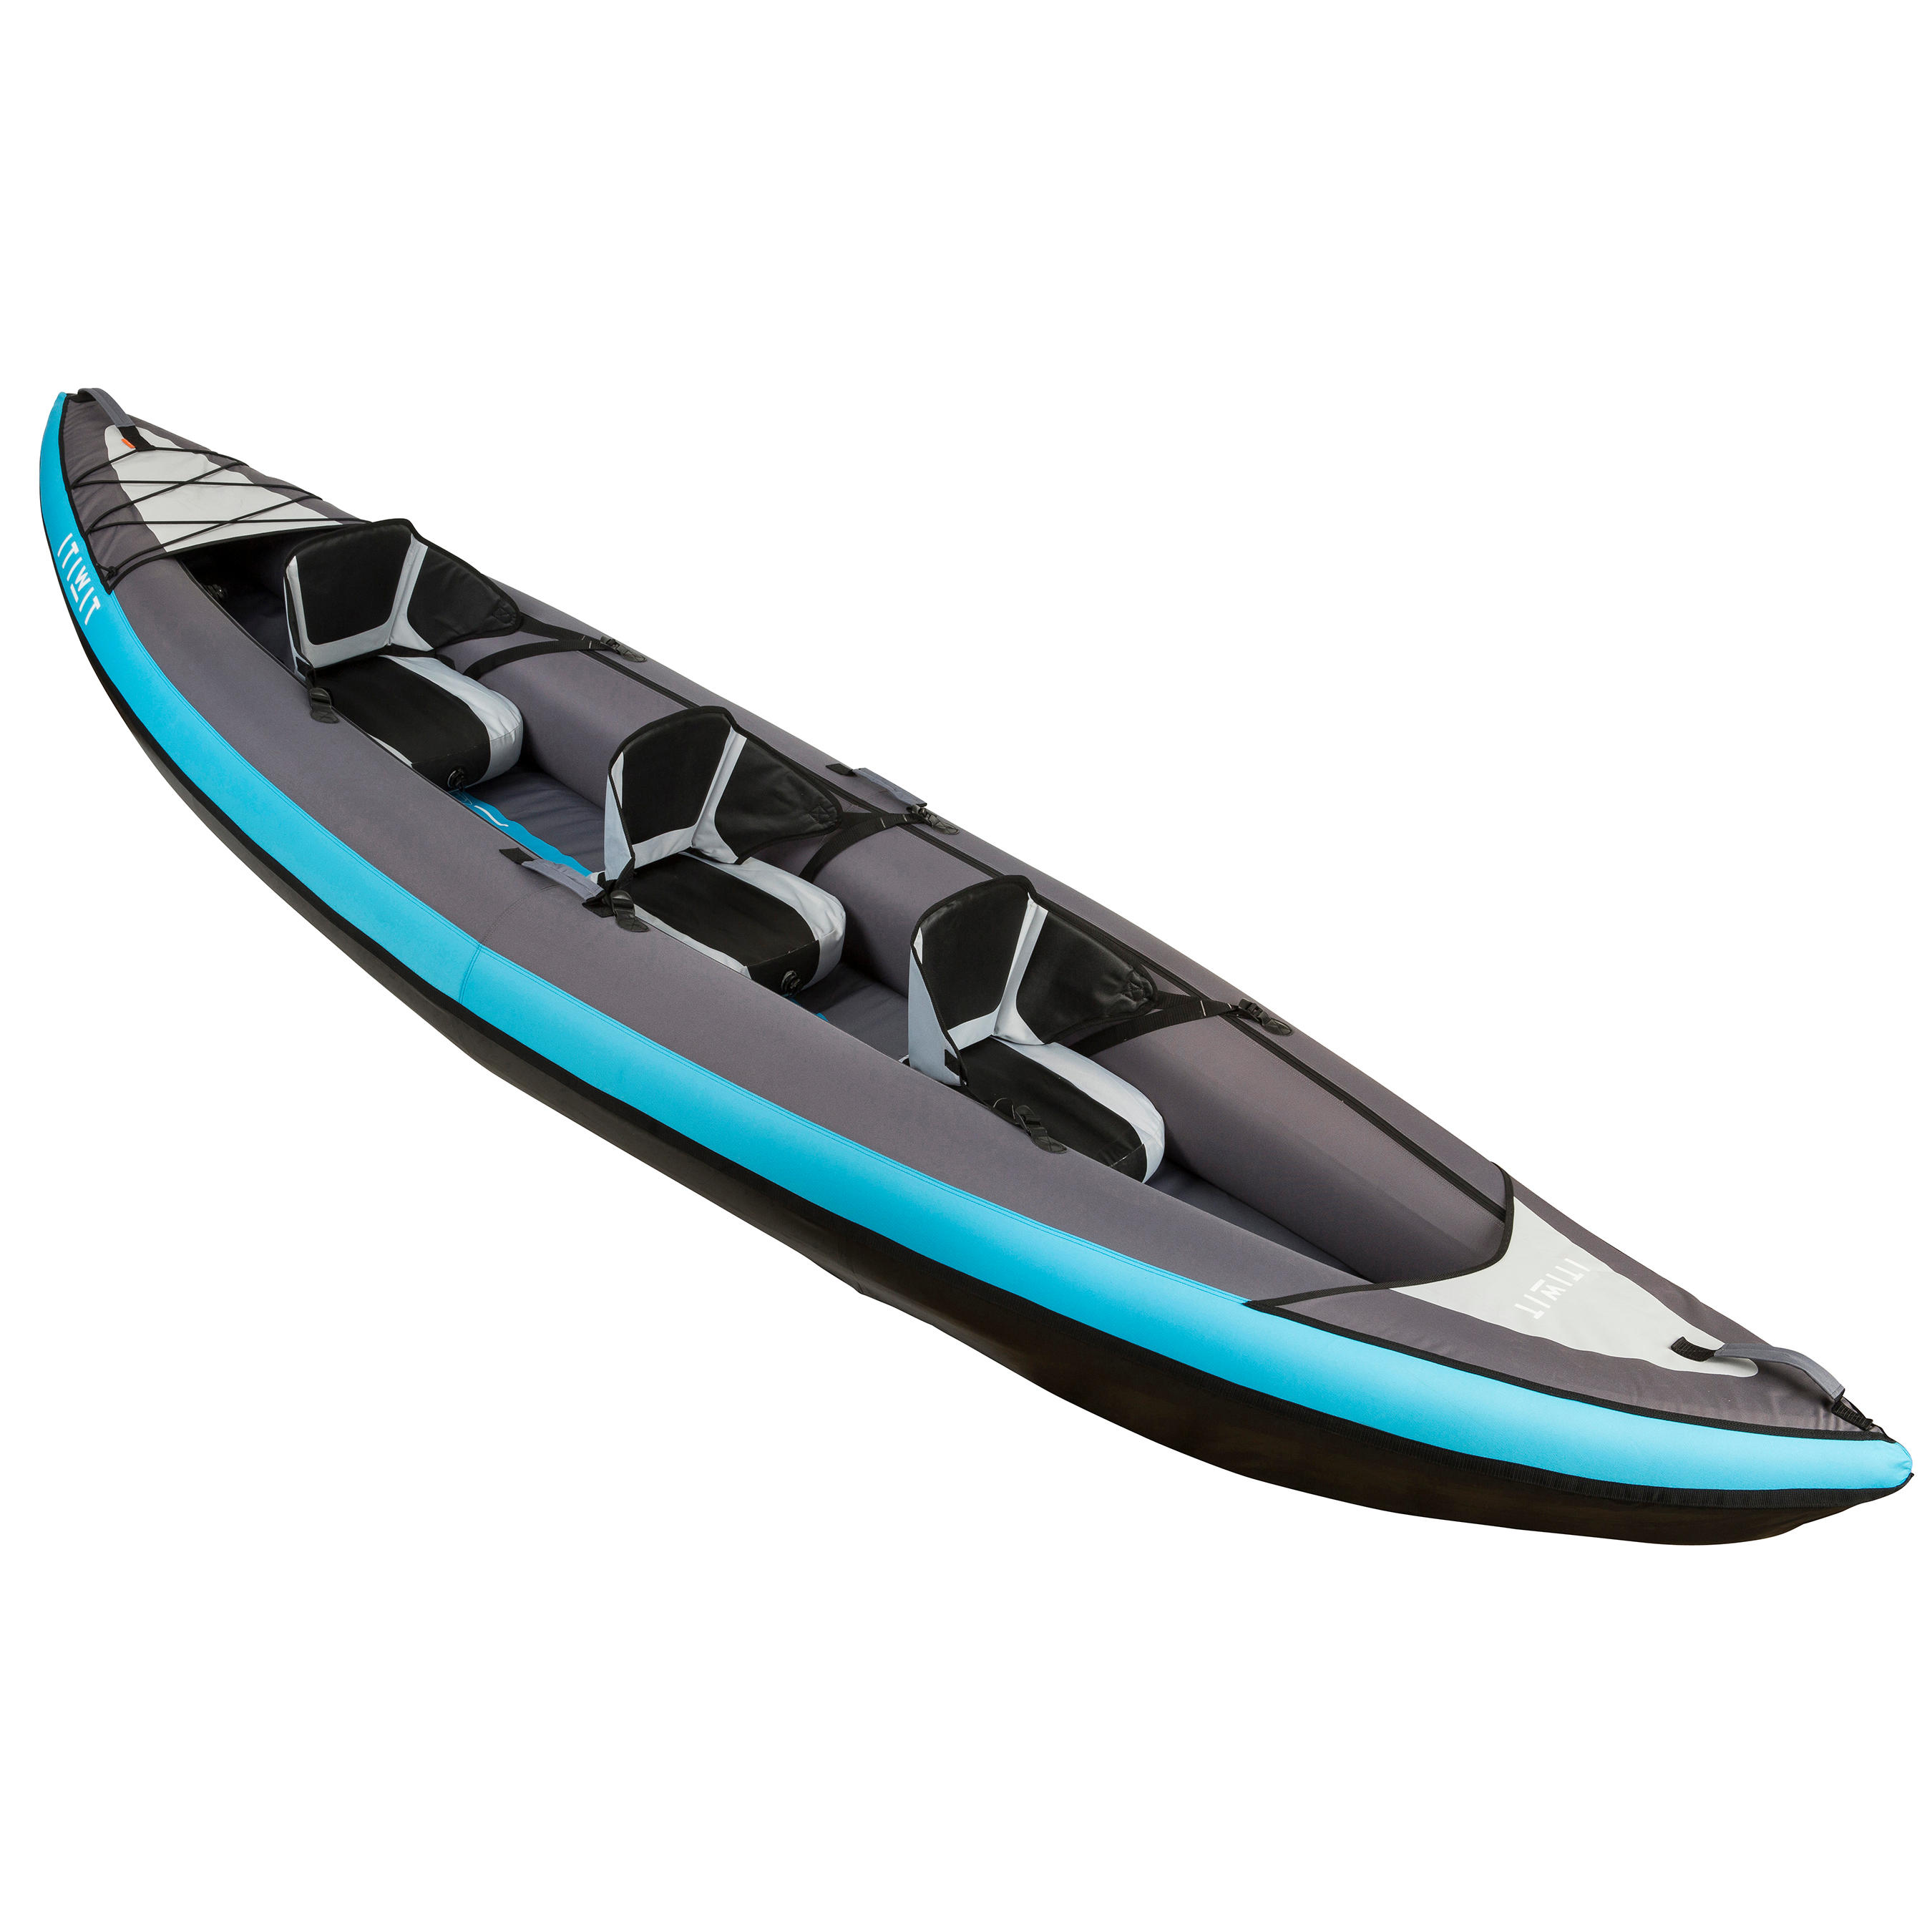 Vessie droite pour kayak 100 ITIWIT 3 - ITIWIT